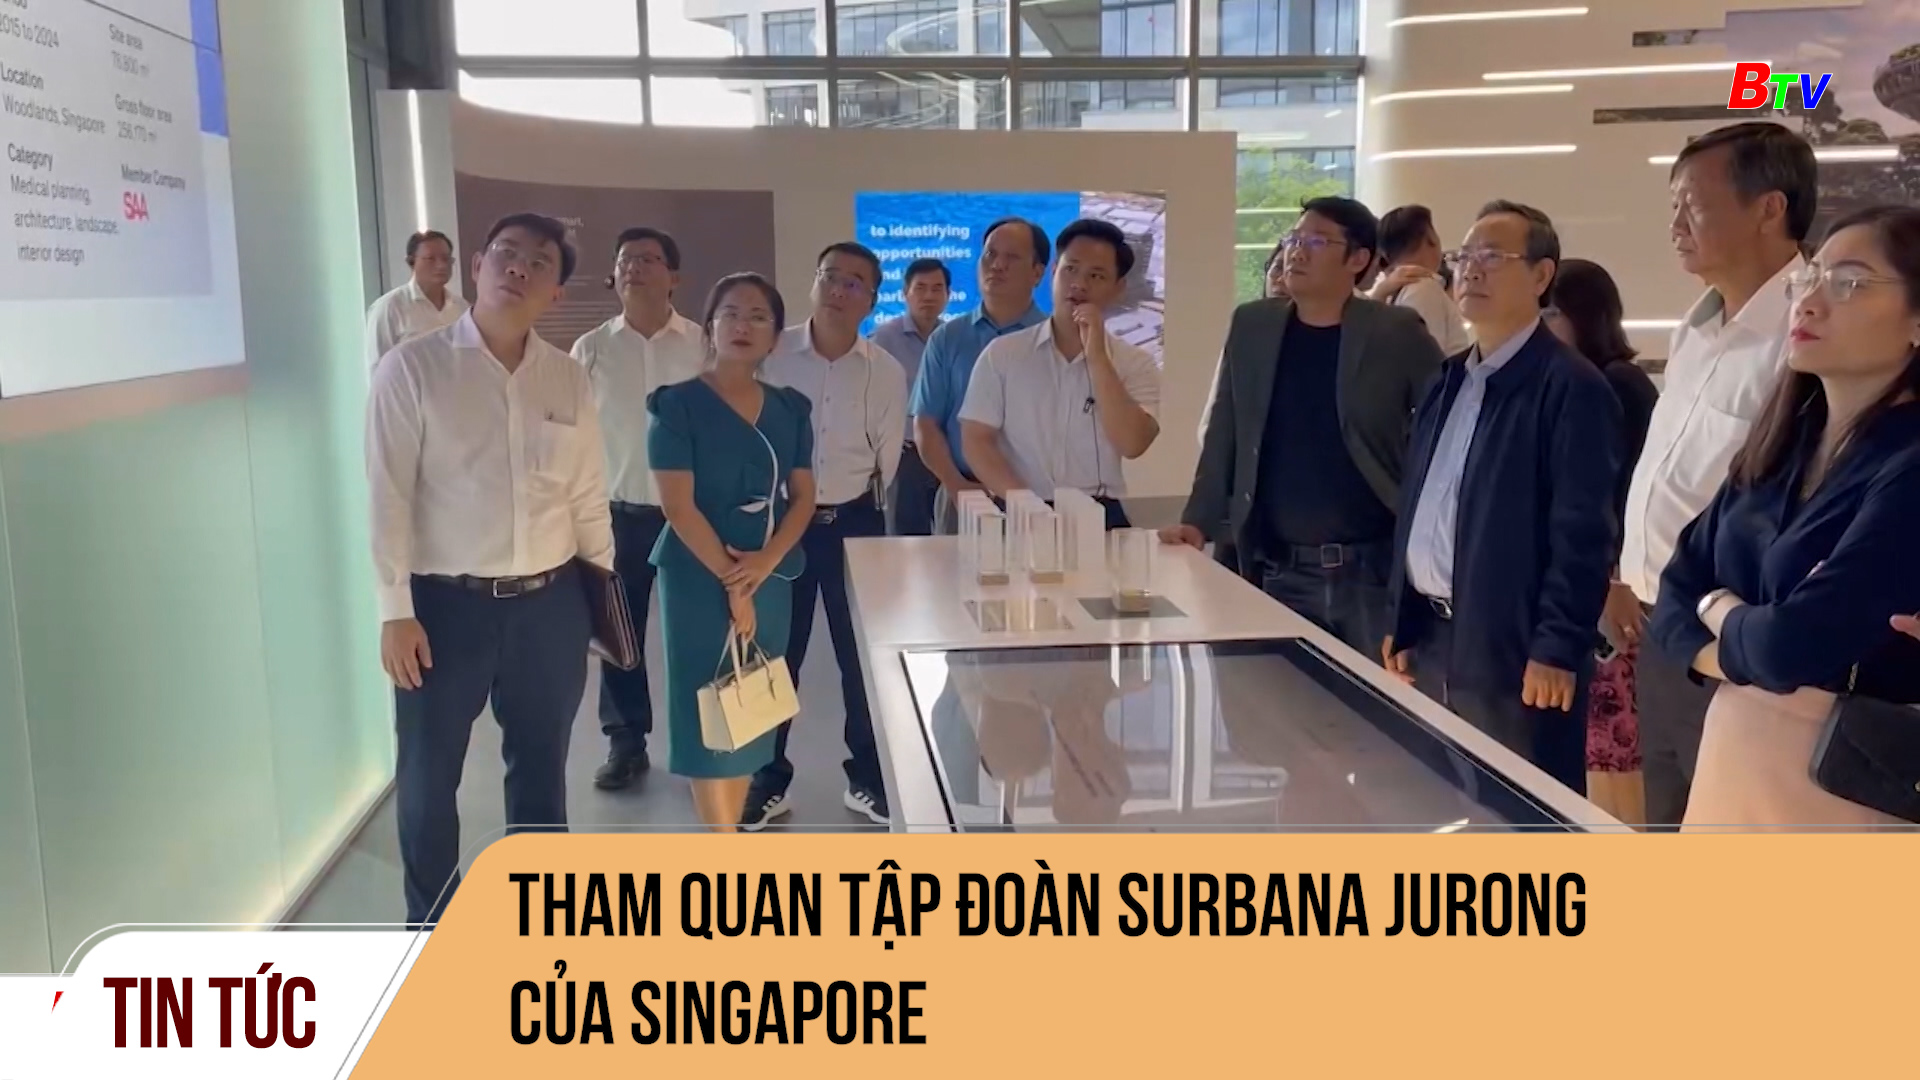 Tham quan tập đoàn Surbana Jurong của Singapore